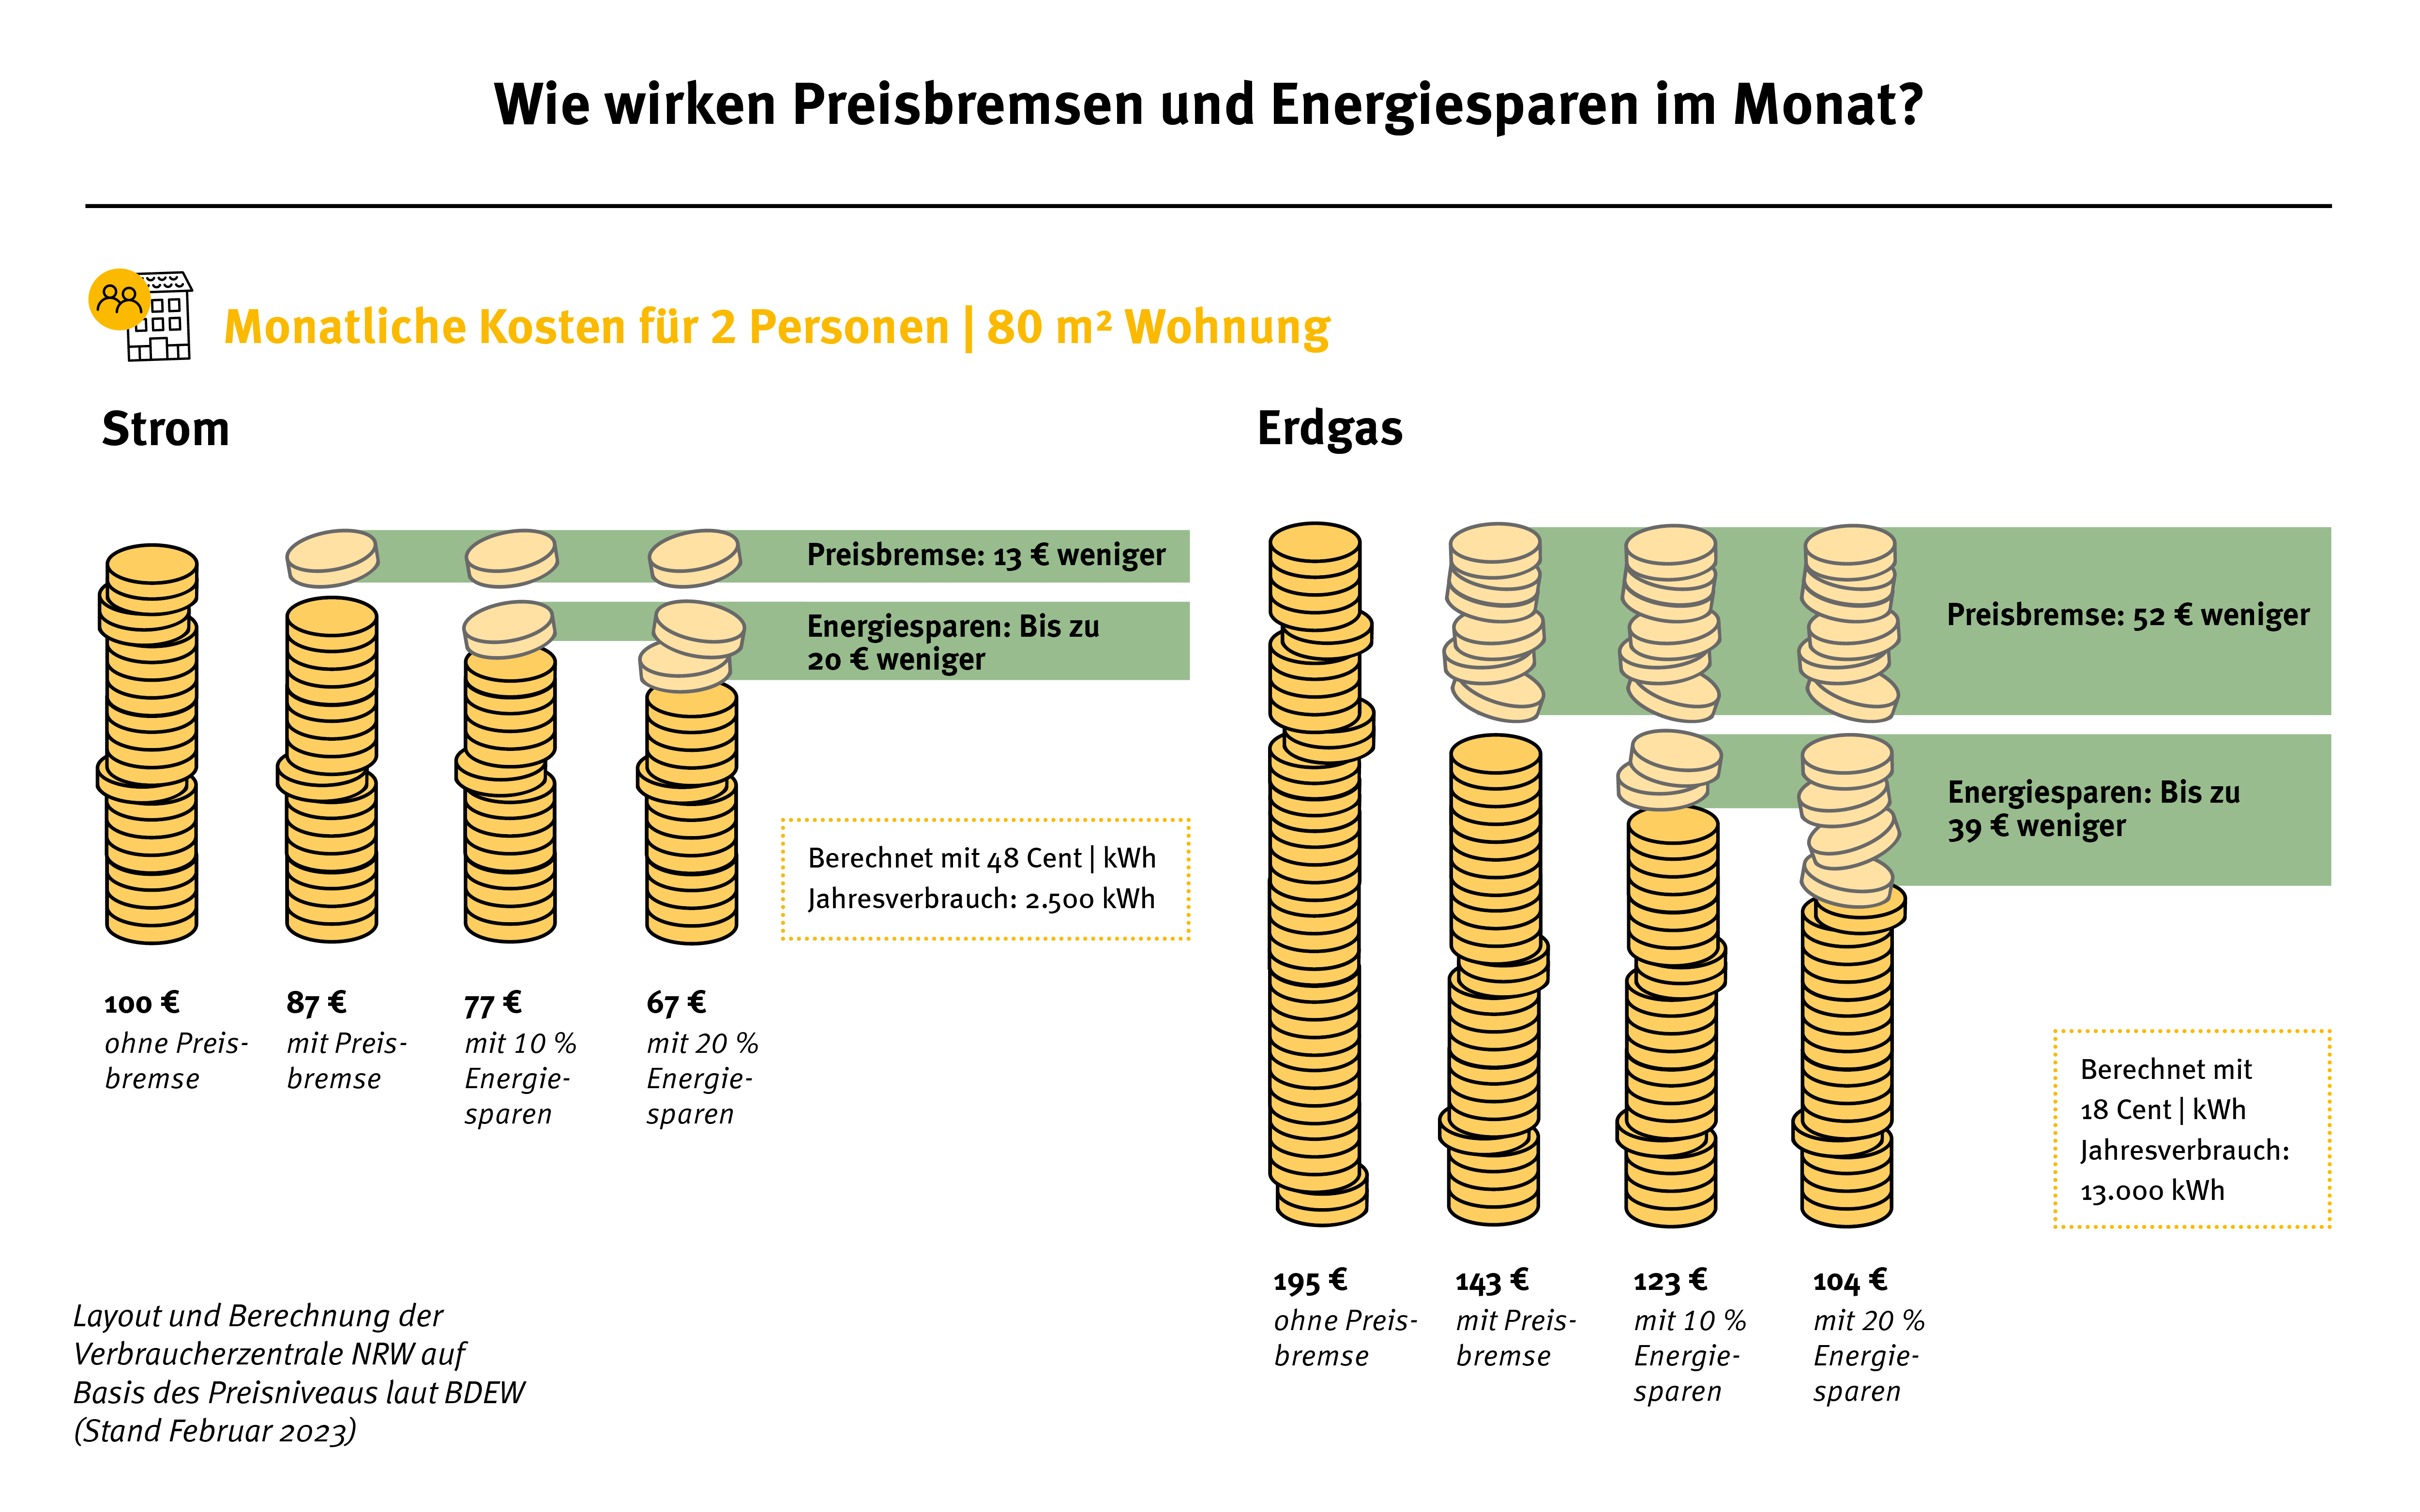 Die Grafik zeigt die monatlichen Kosten für einen Muster-Haushalt.